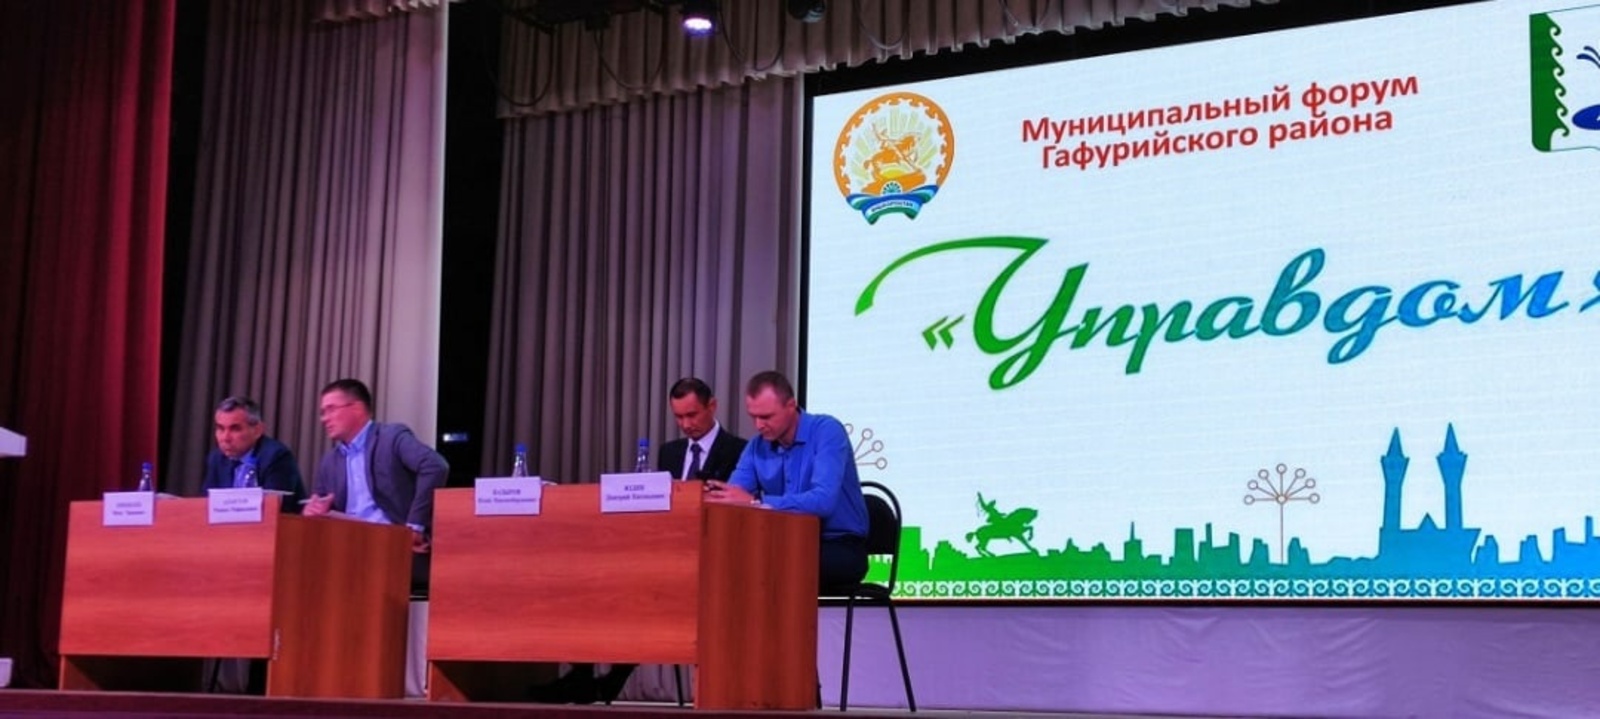 Во Дворце культуры села Красноусольский прошёл муниципальный форум "Управдом"